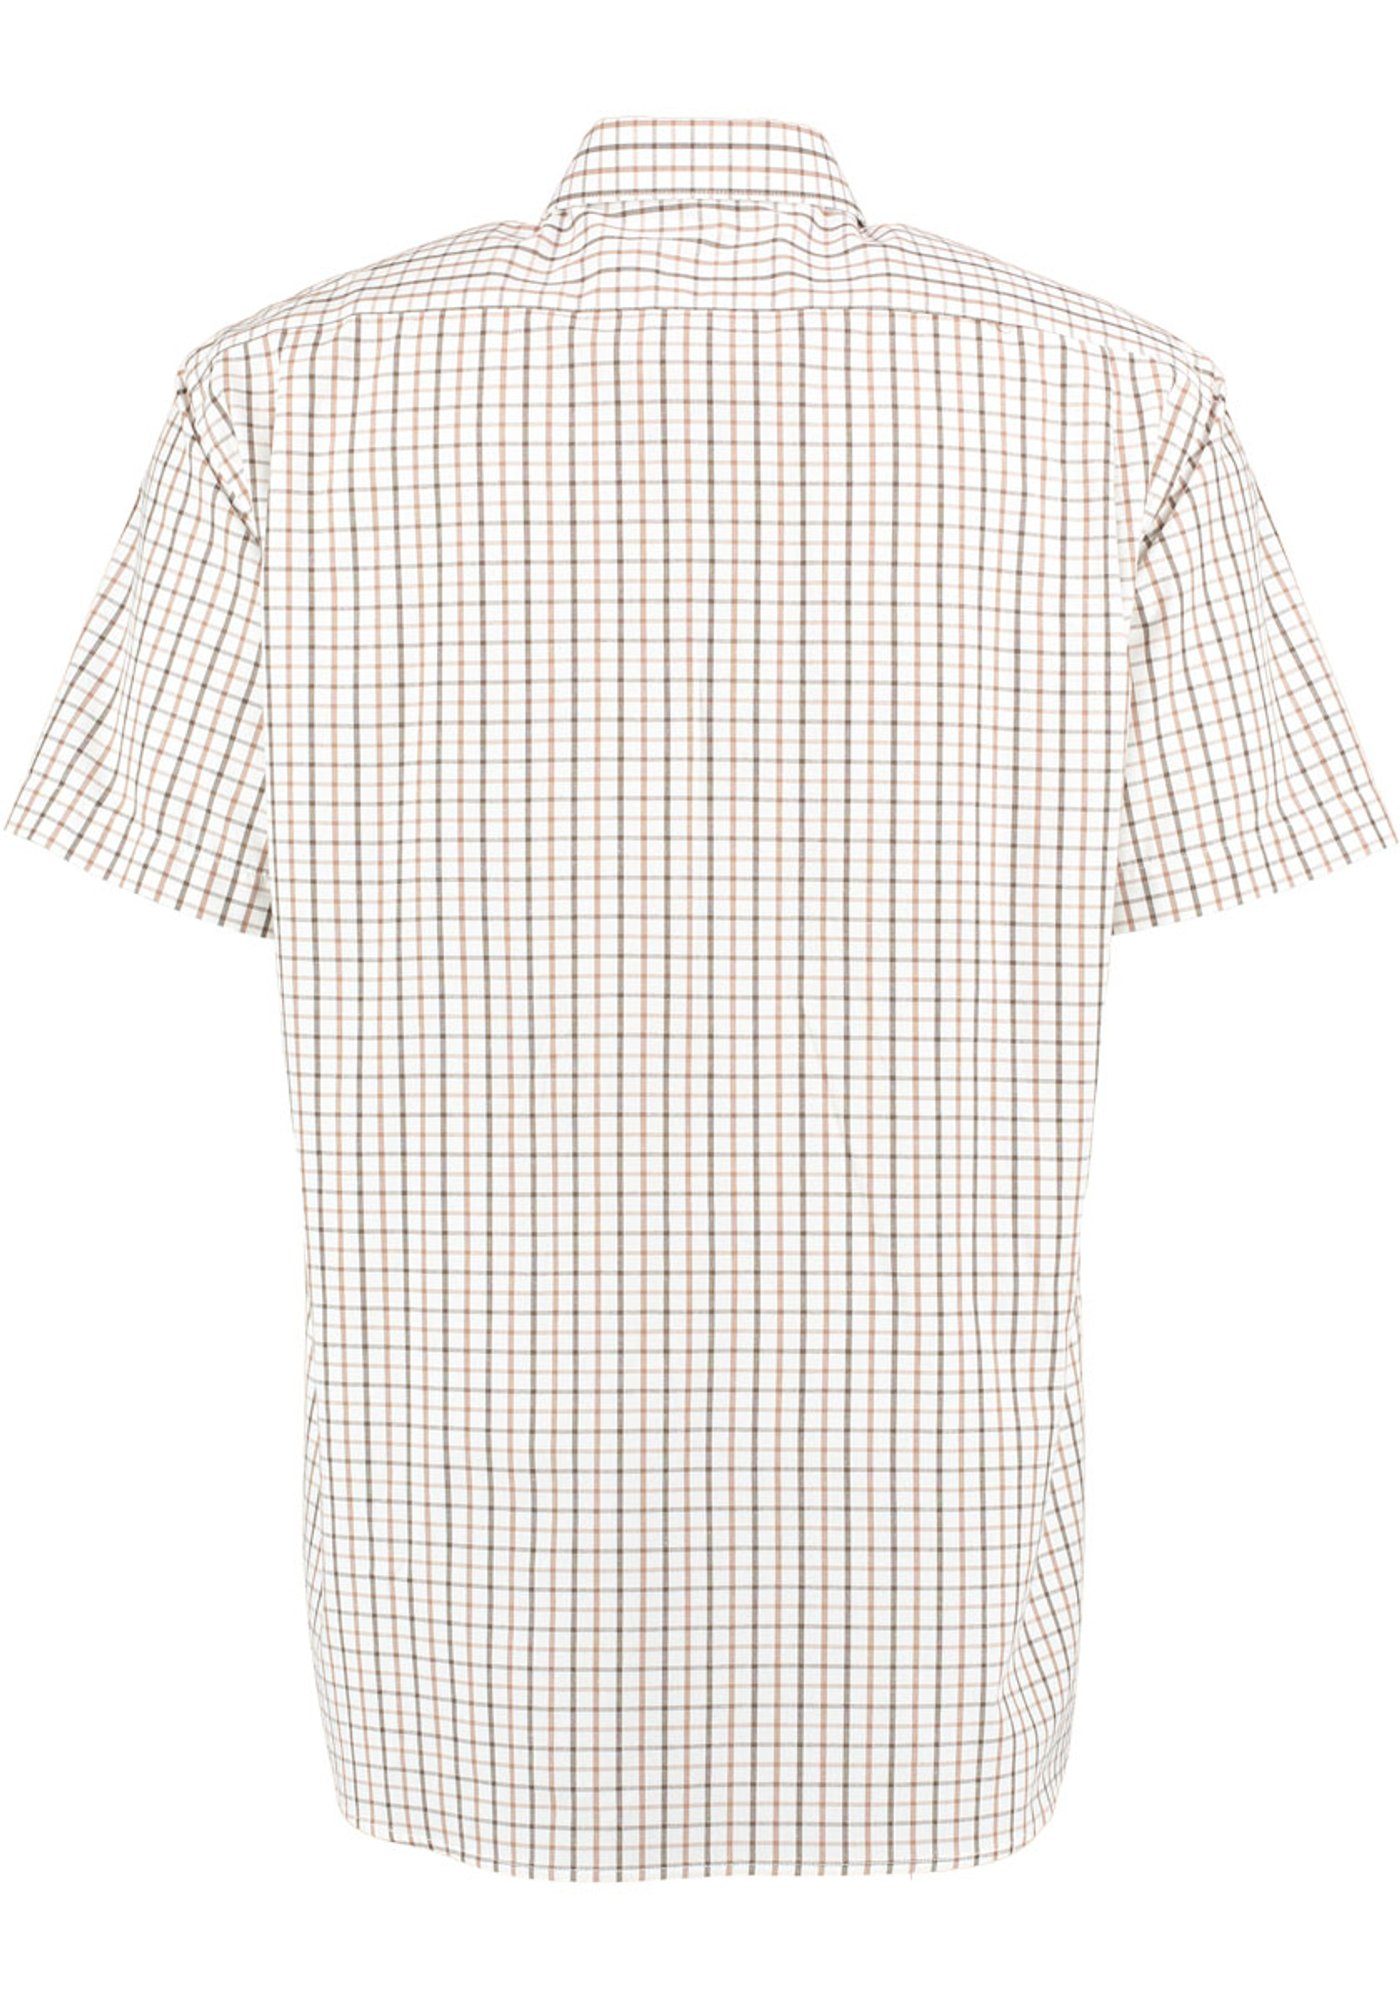 OS-Trachten mit auf Hirsch-Stickerei Trachtenhemd Brusttasche Skybom Kurzarmhemd hellbraun der